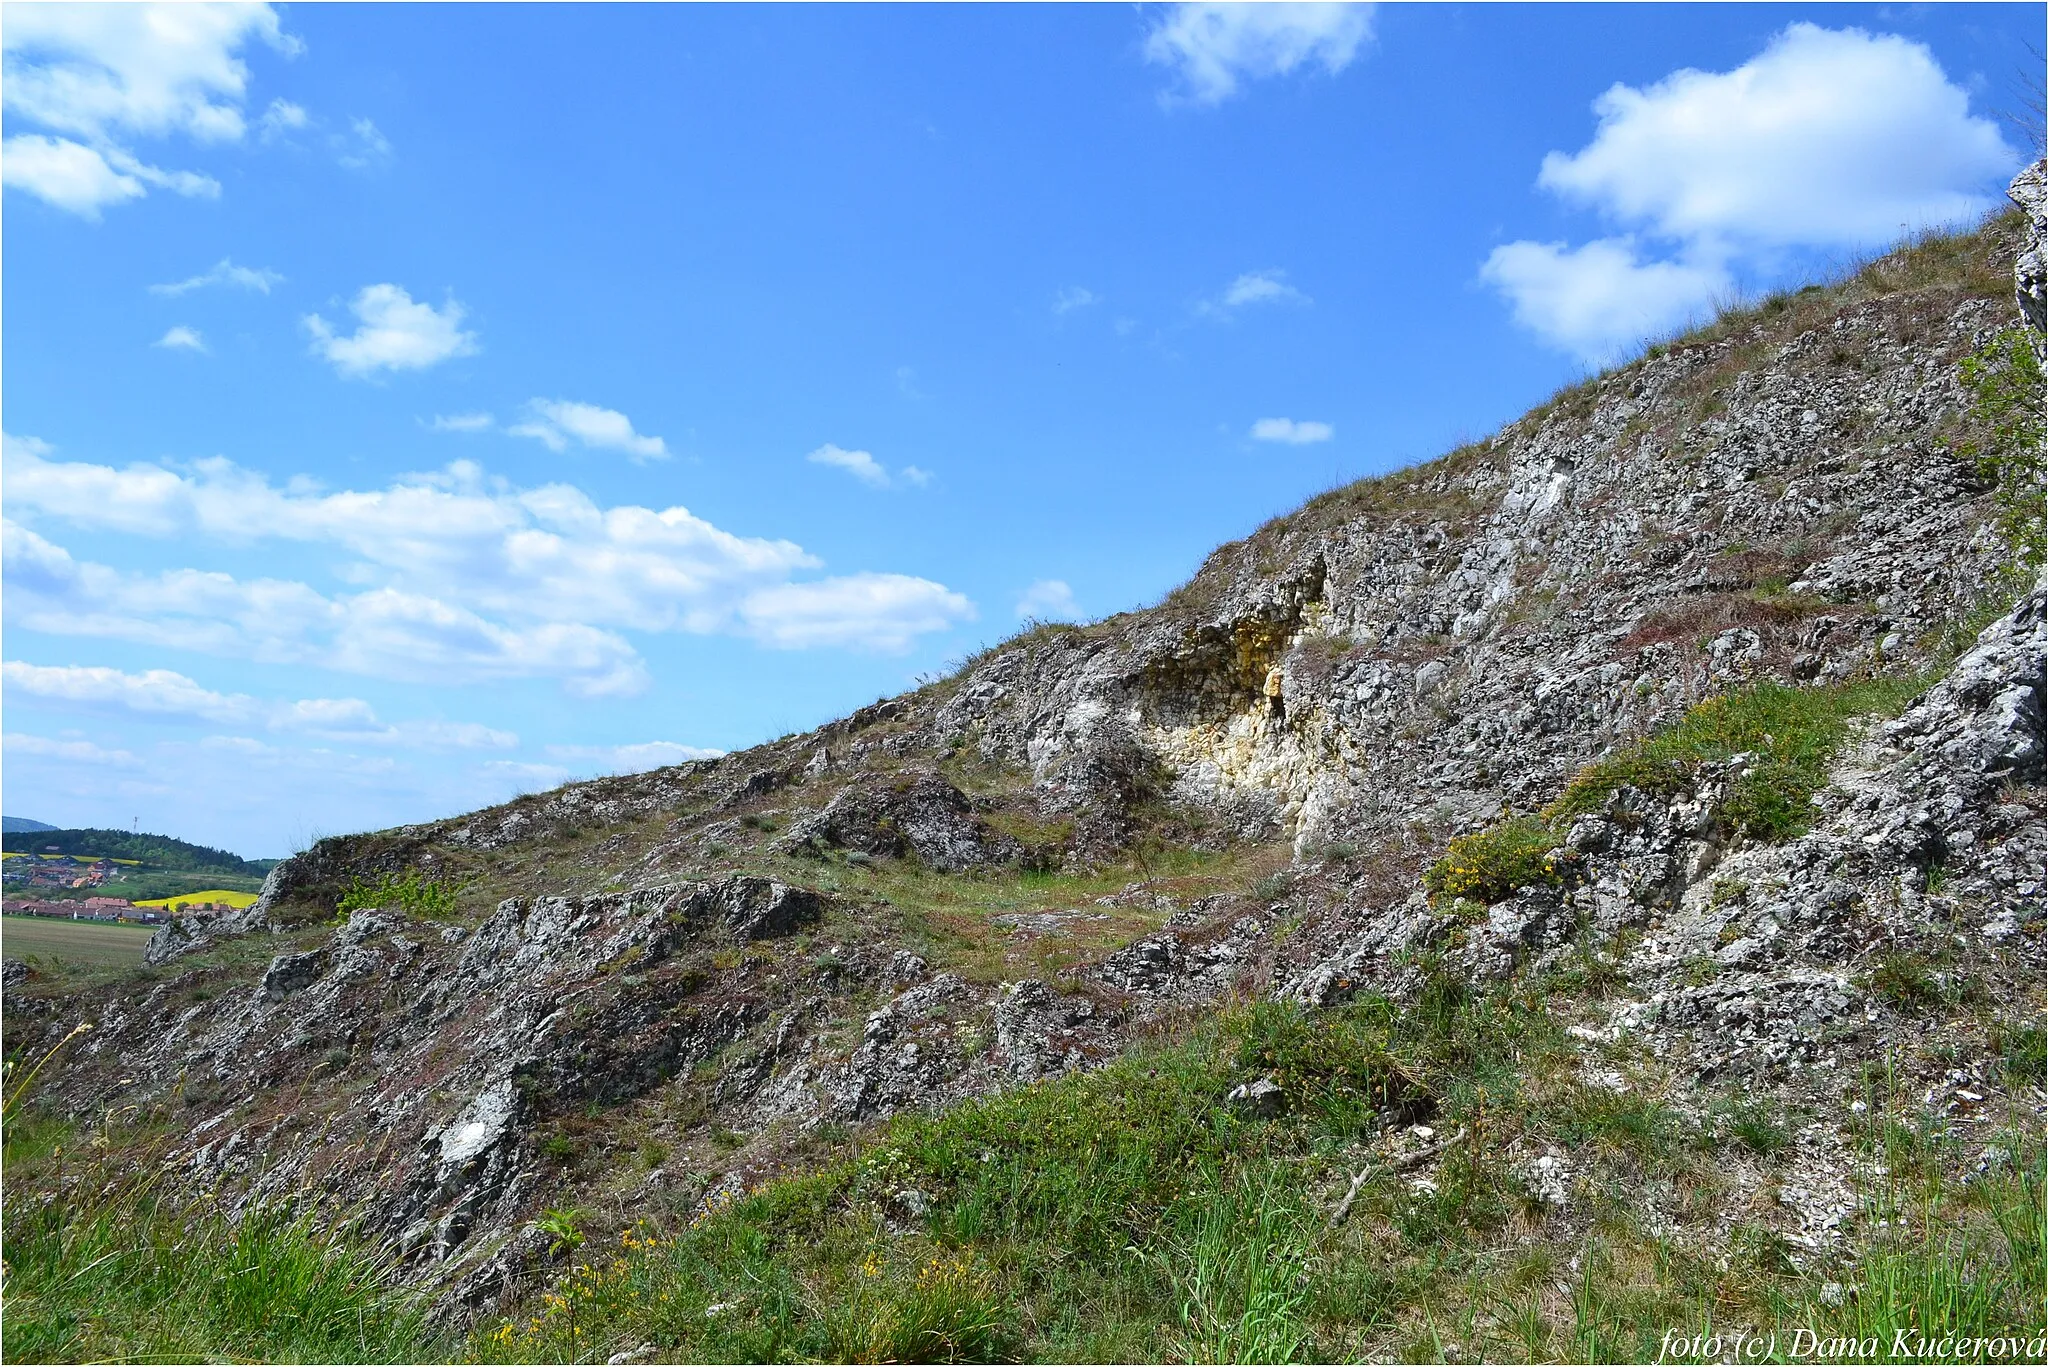 Photo showing: Přírodní památka Malhostovická pecka byla vyhlášena v roce 1980 na ploše 1,85 ha v k.ú. Malhostovice a je tvořena vyvýšeným skalním útvarem z devonských vápenců (300-332 m n.m.) se skalní stepí a teplomilnými stepními společenstvy s roztroušenými dřevinami při úpatí. Lokalita je obklopena intenzivně obhospodařovanou zemědělskou půdou. Přírodní památka je především stepní lokalitou a dřeviny jsou v území zastoupeny jen roztroušeně, především při jižním úpatí. Především jde o více druhů keřů: růži šípkovou, svídu krvavou, trnku obecnou vč. některých dalších. Také tu najdeme některé druhy ovocných stromů.